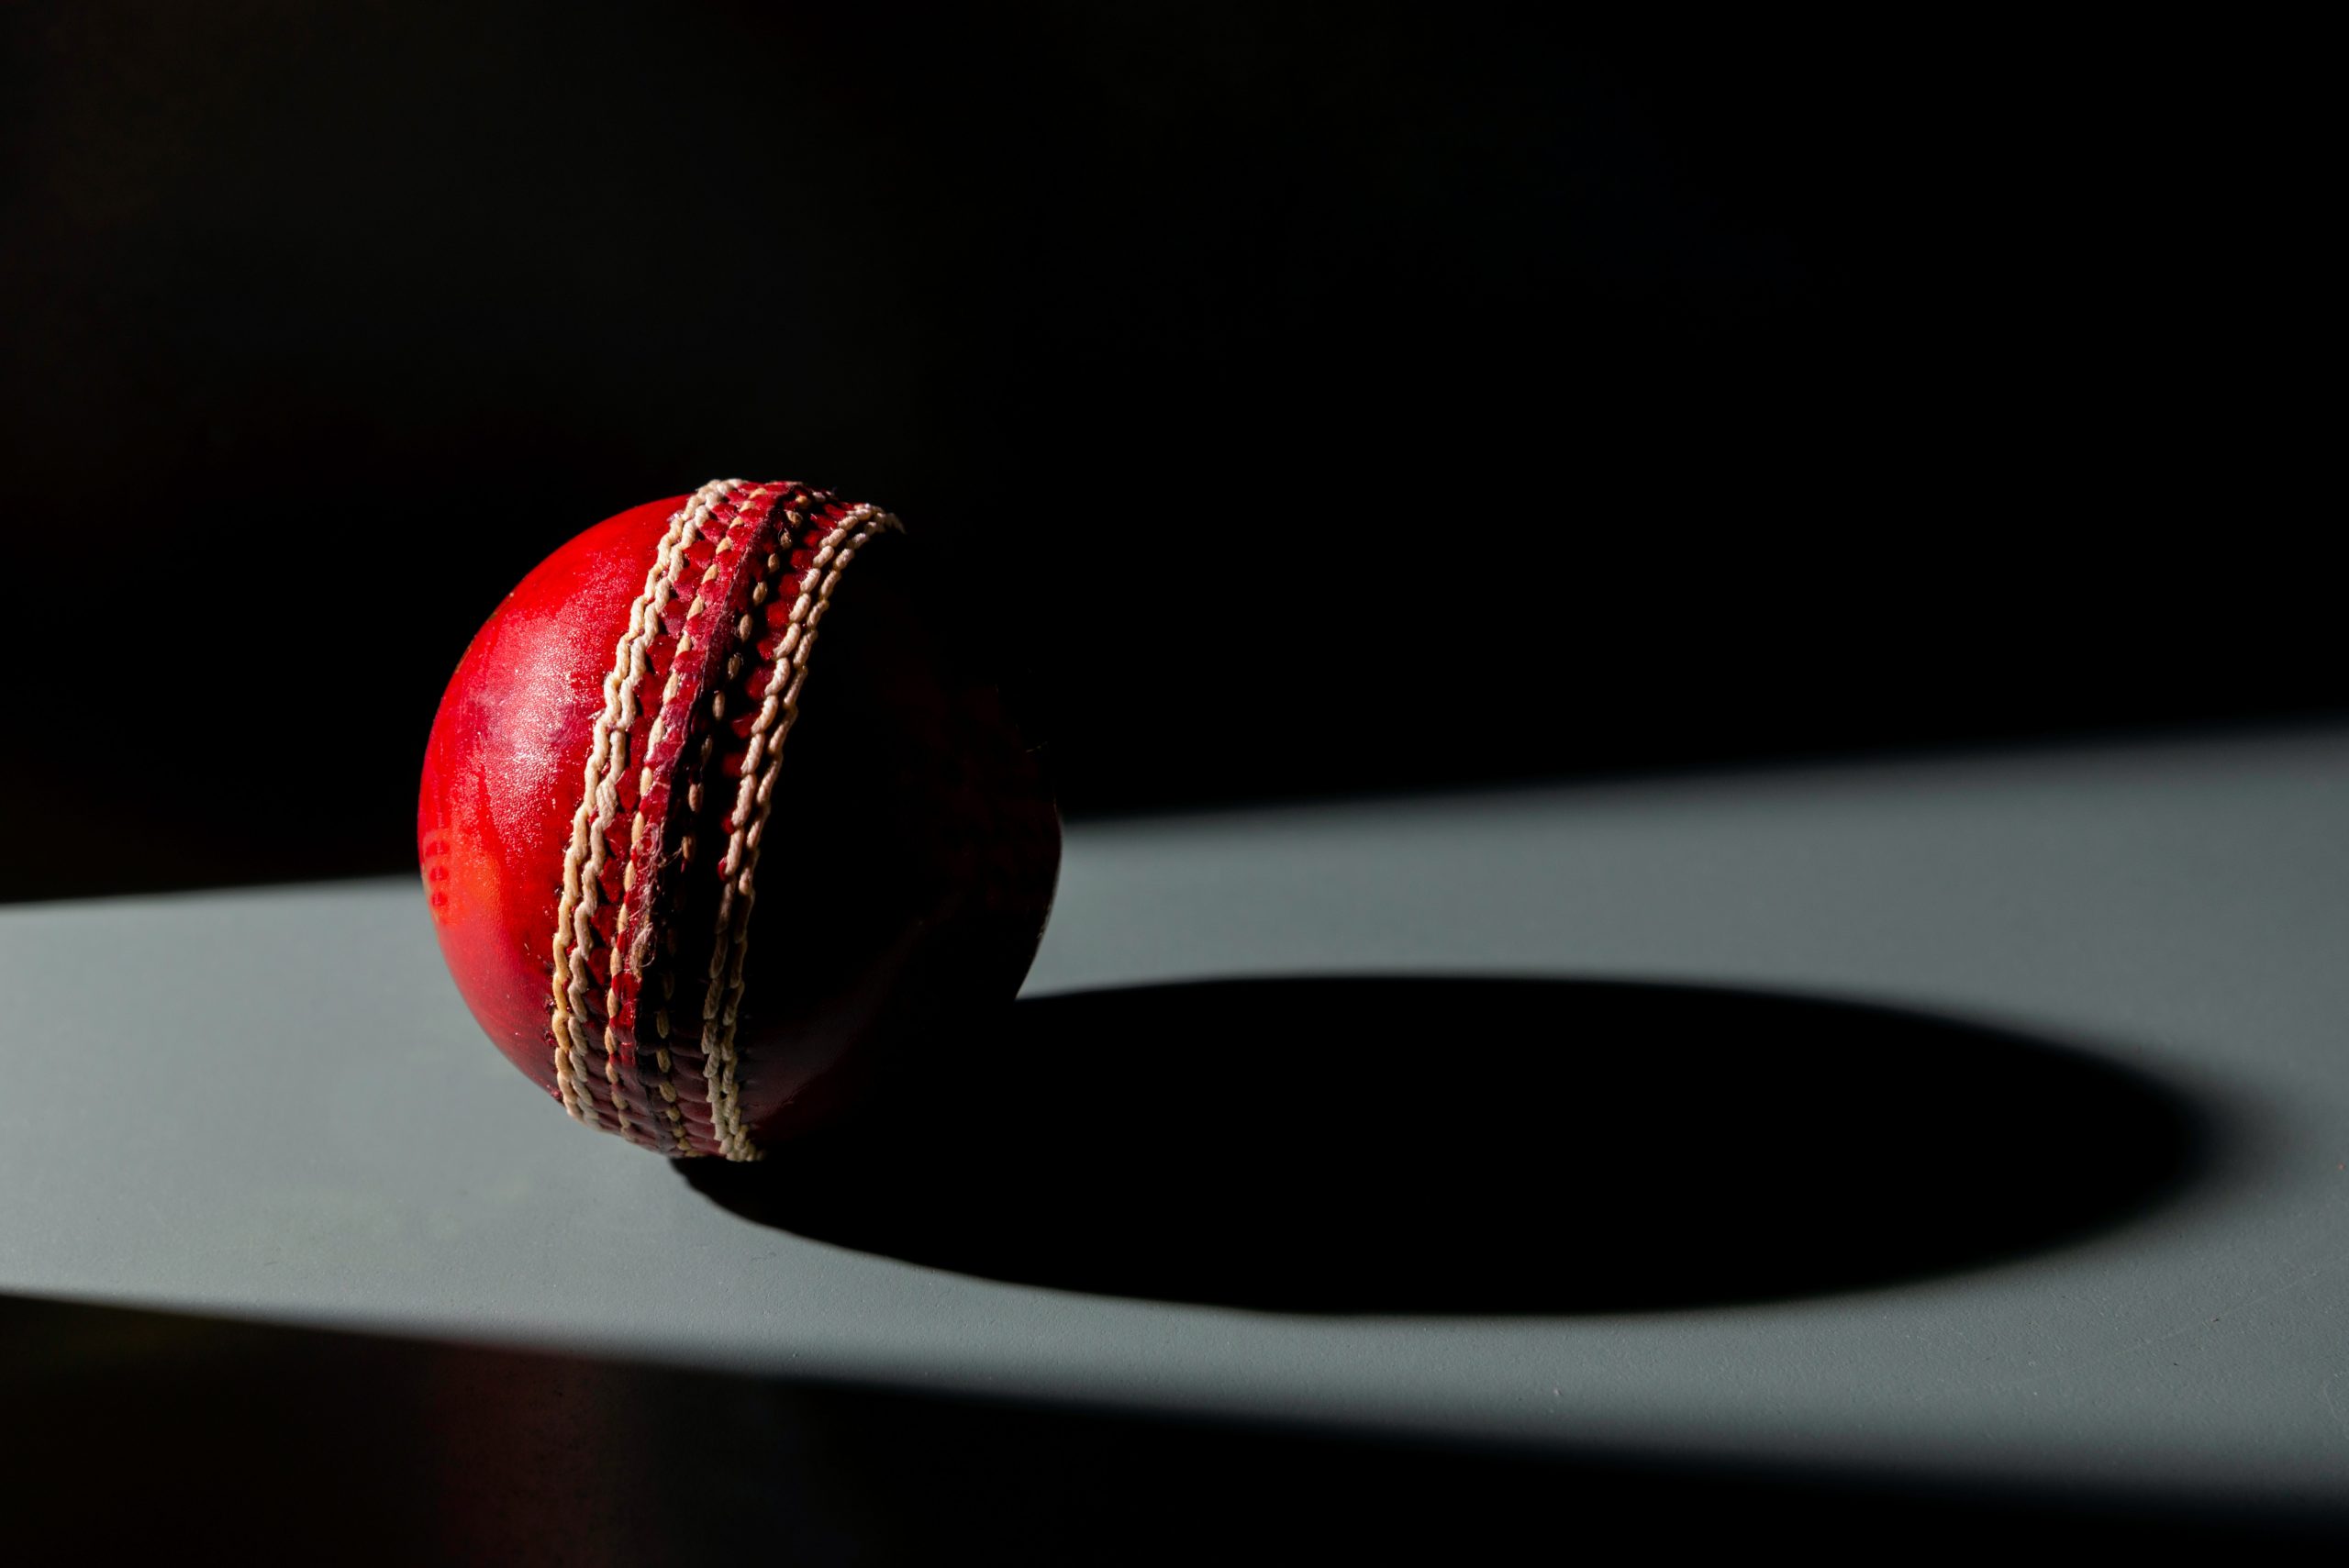  India halts cricket league as coronavirus cases cross 20 million